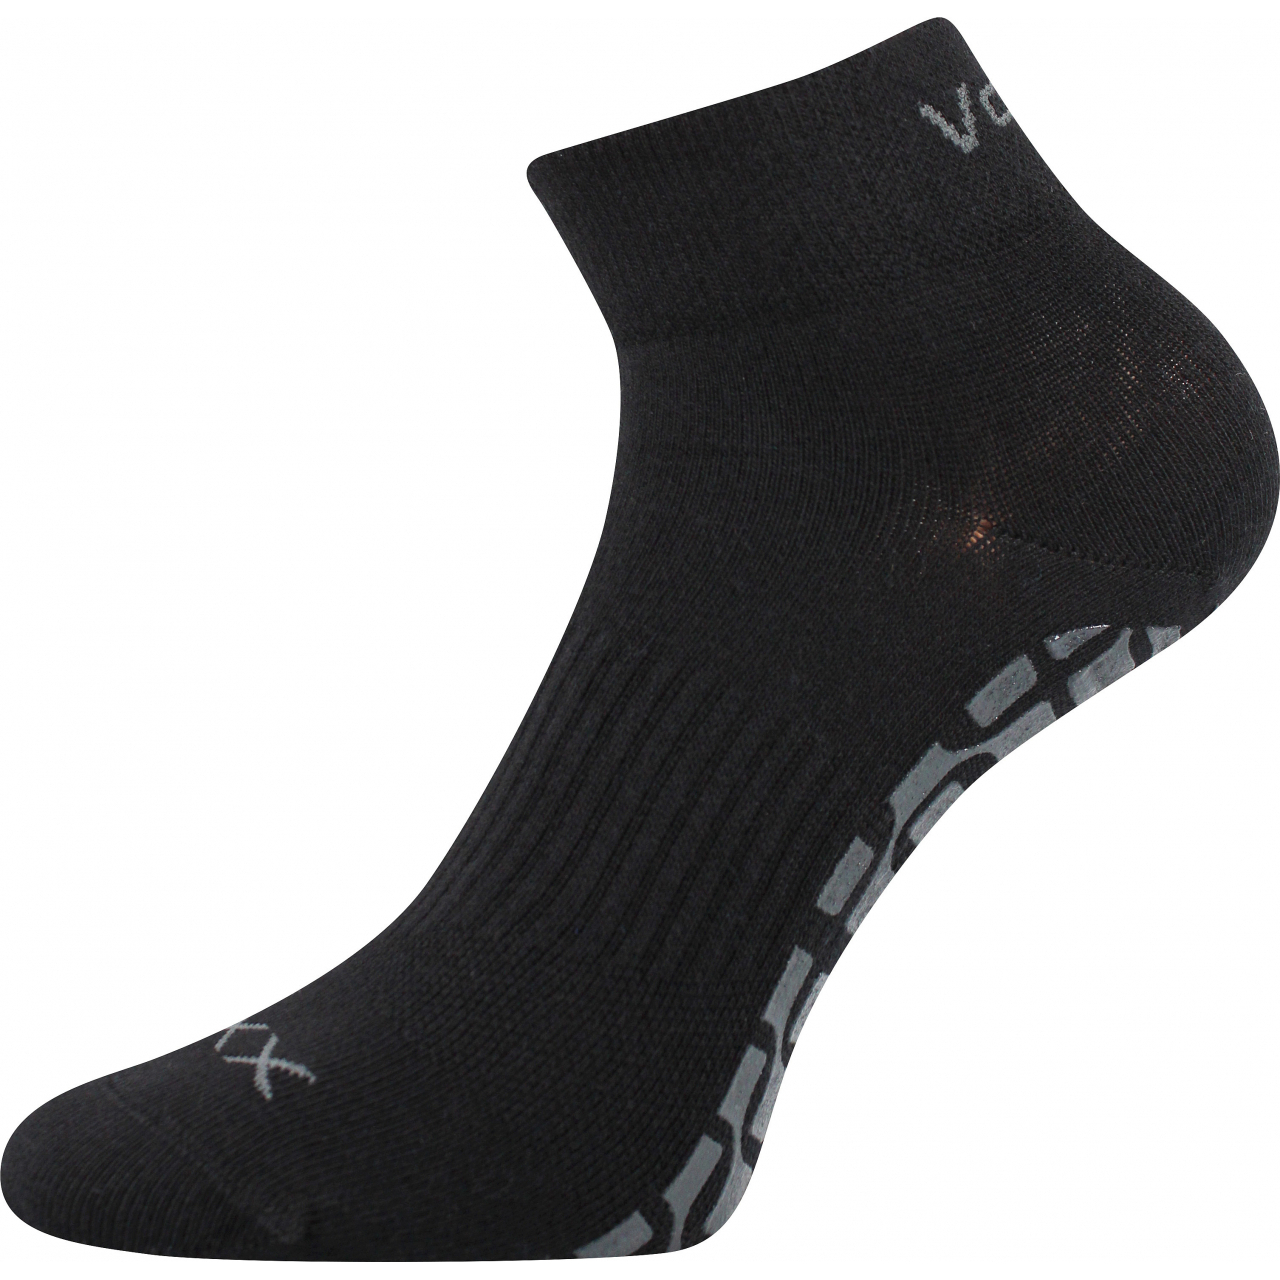 Ponožky protiskluzové unisex Voxx Jumpyx - černé, 35-38